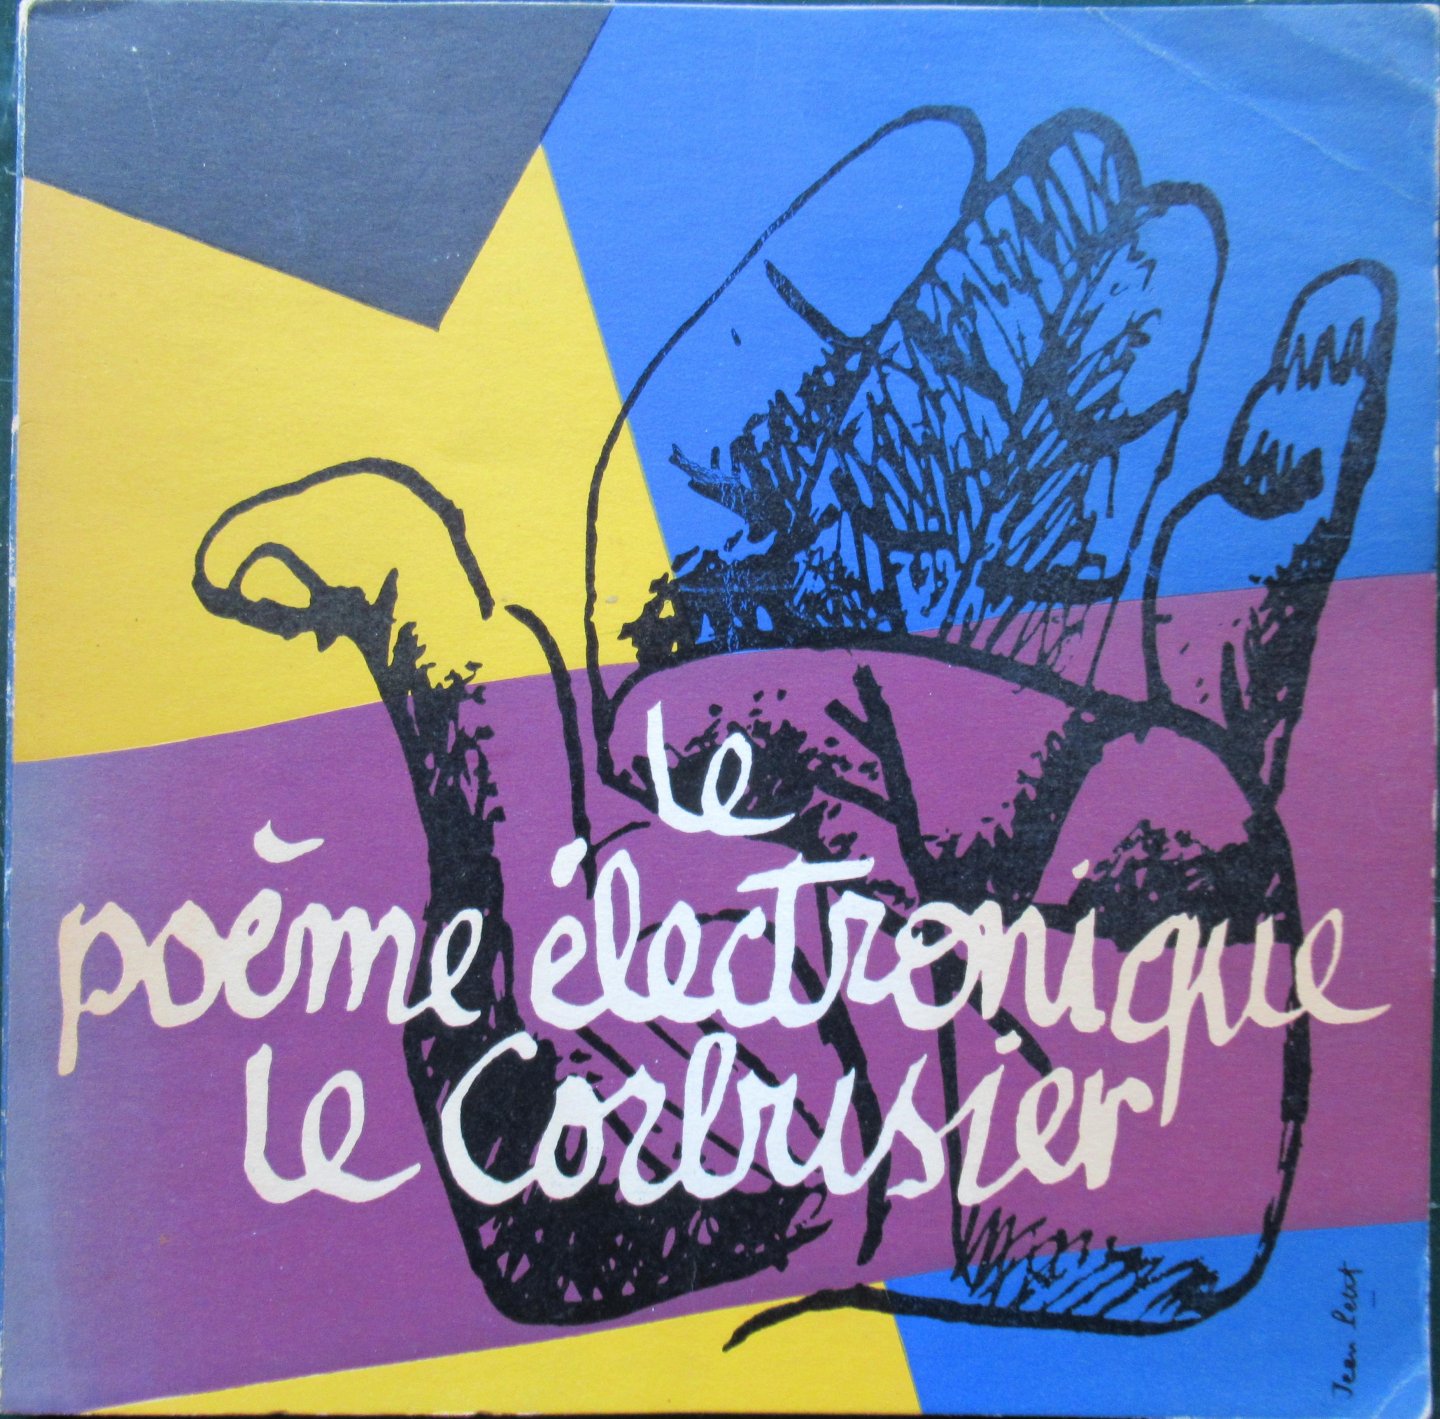 Le Corbusier - Le Poeme electronique le Corbusier